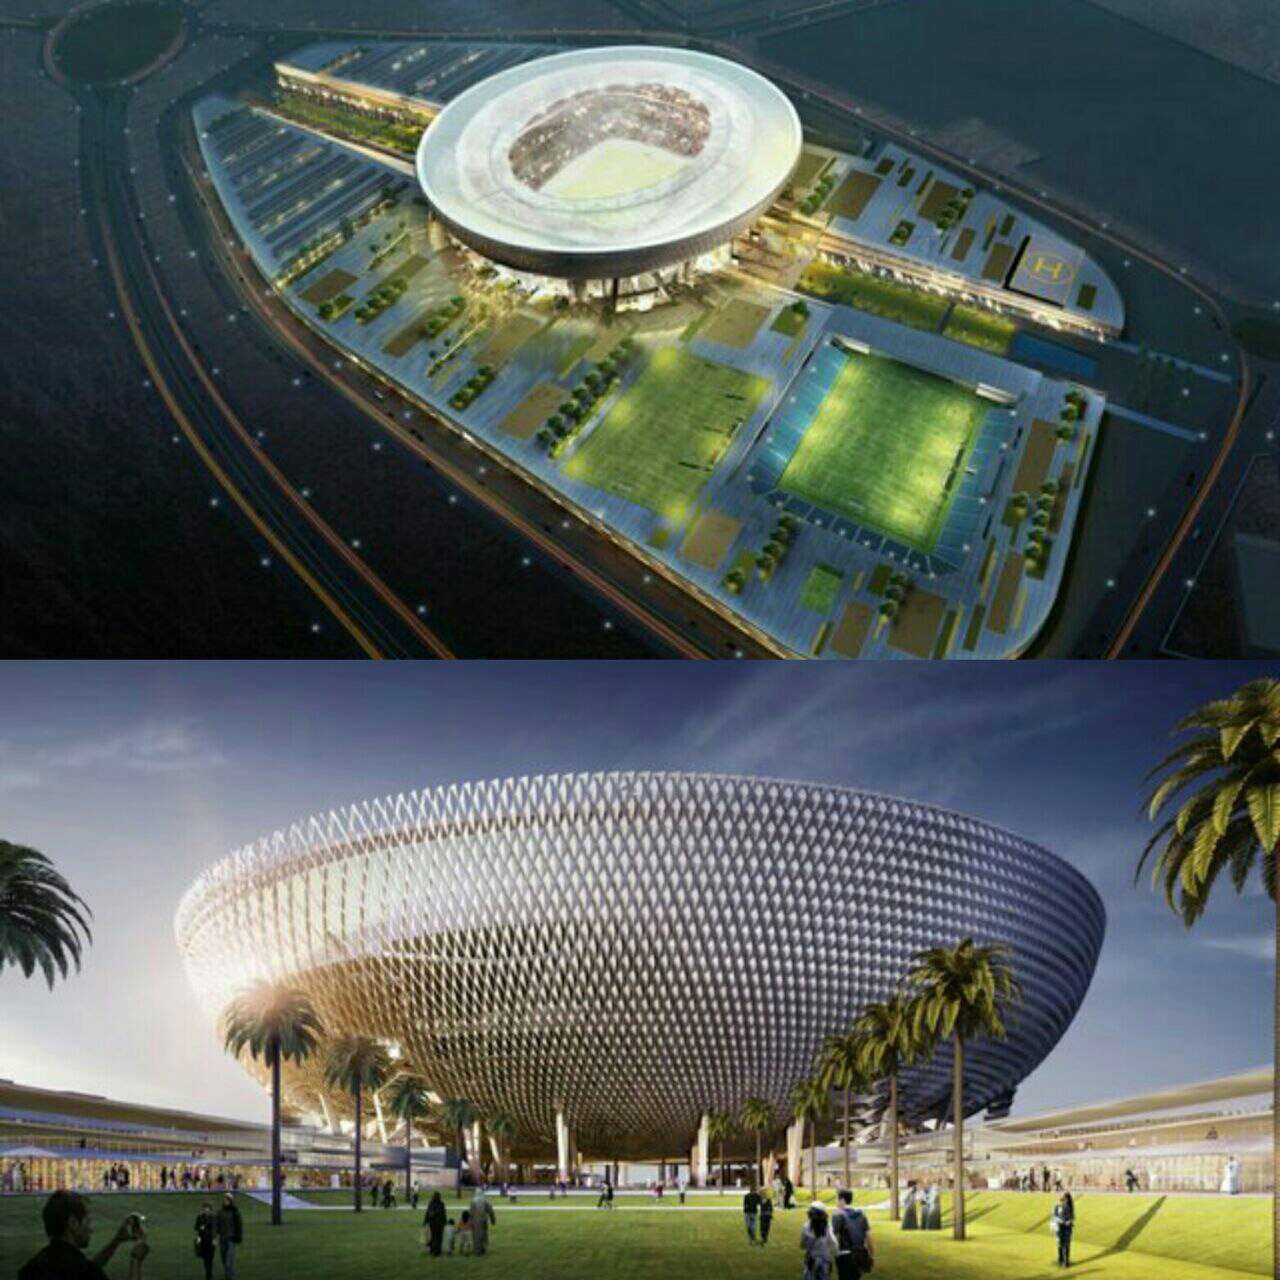 استادیوم کاسه مانند بزرگی در امارات ساخته شده که به مدد طراحی هوشمندی که دارد در گرمای طاقت فرسای این کشور به طور طبیعی خنک می ماند